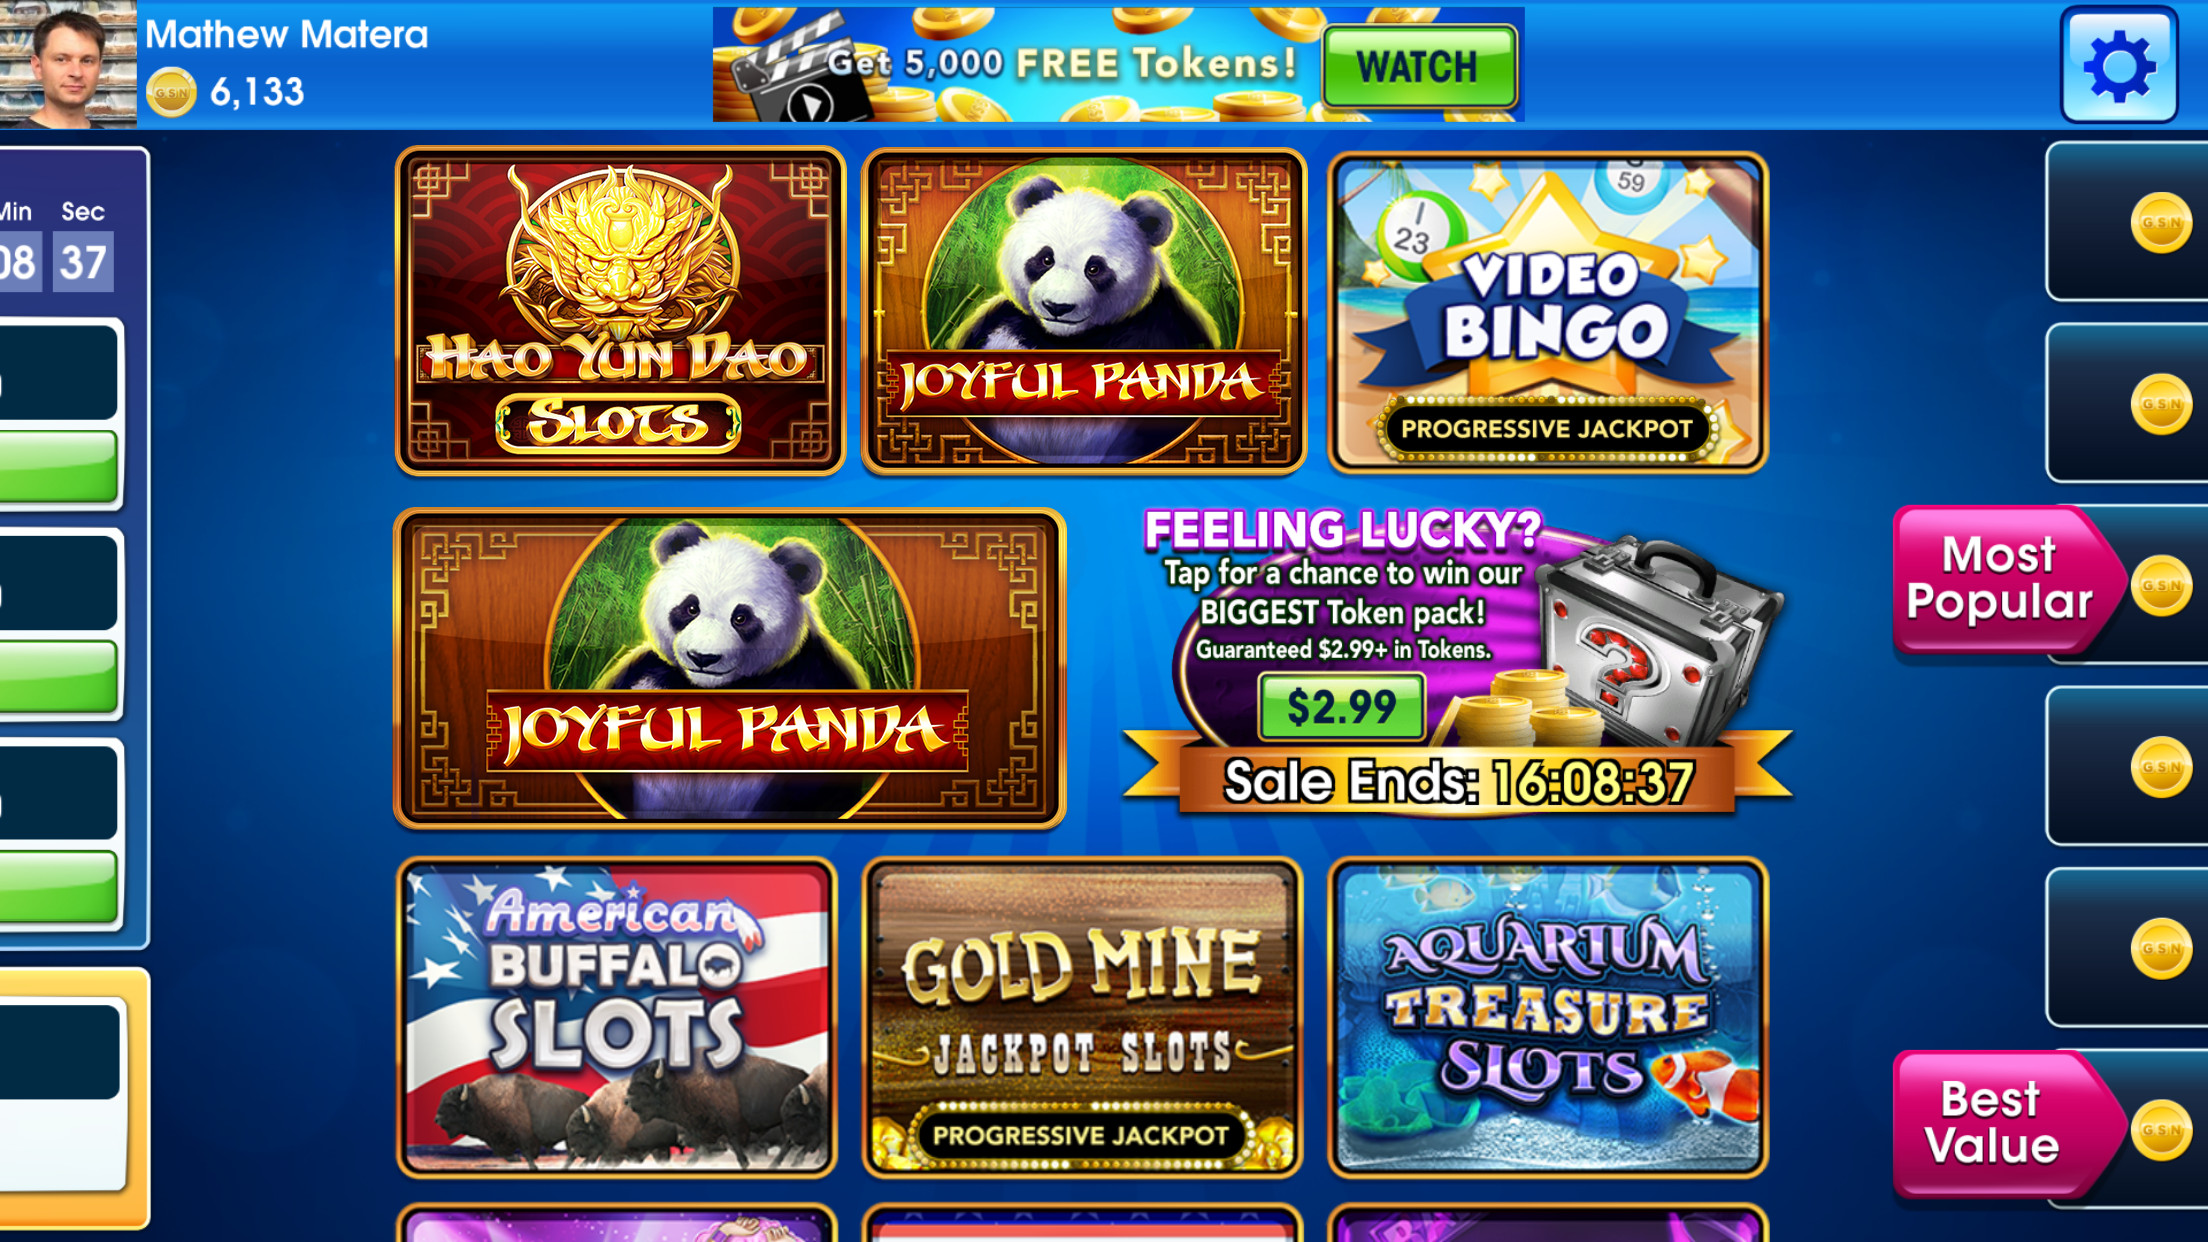 7bit casino 100 free spins